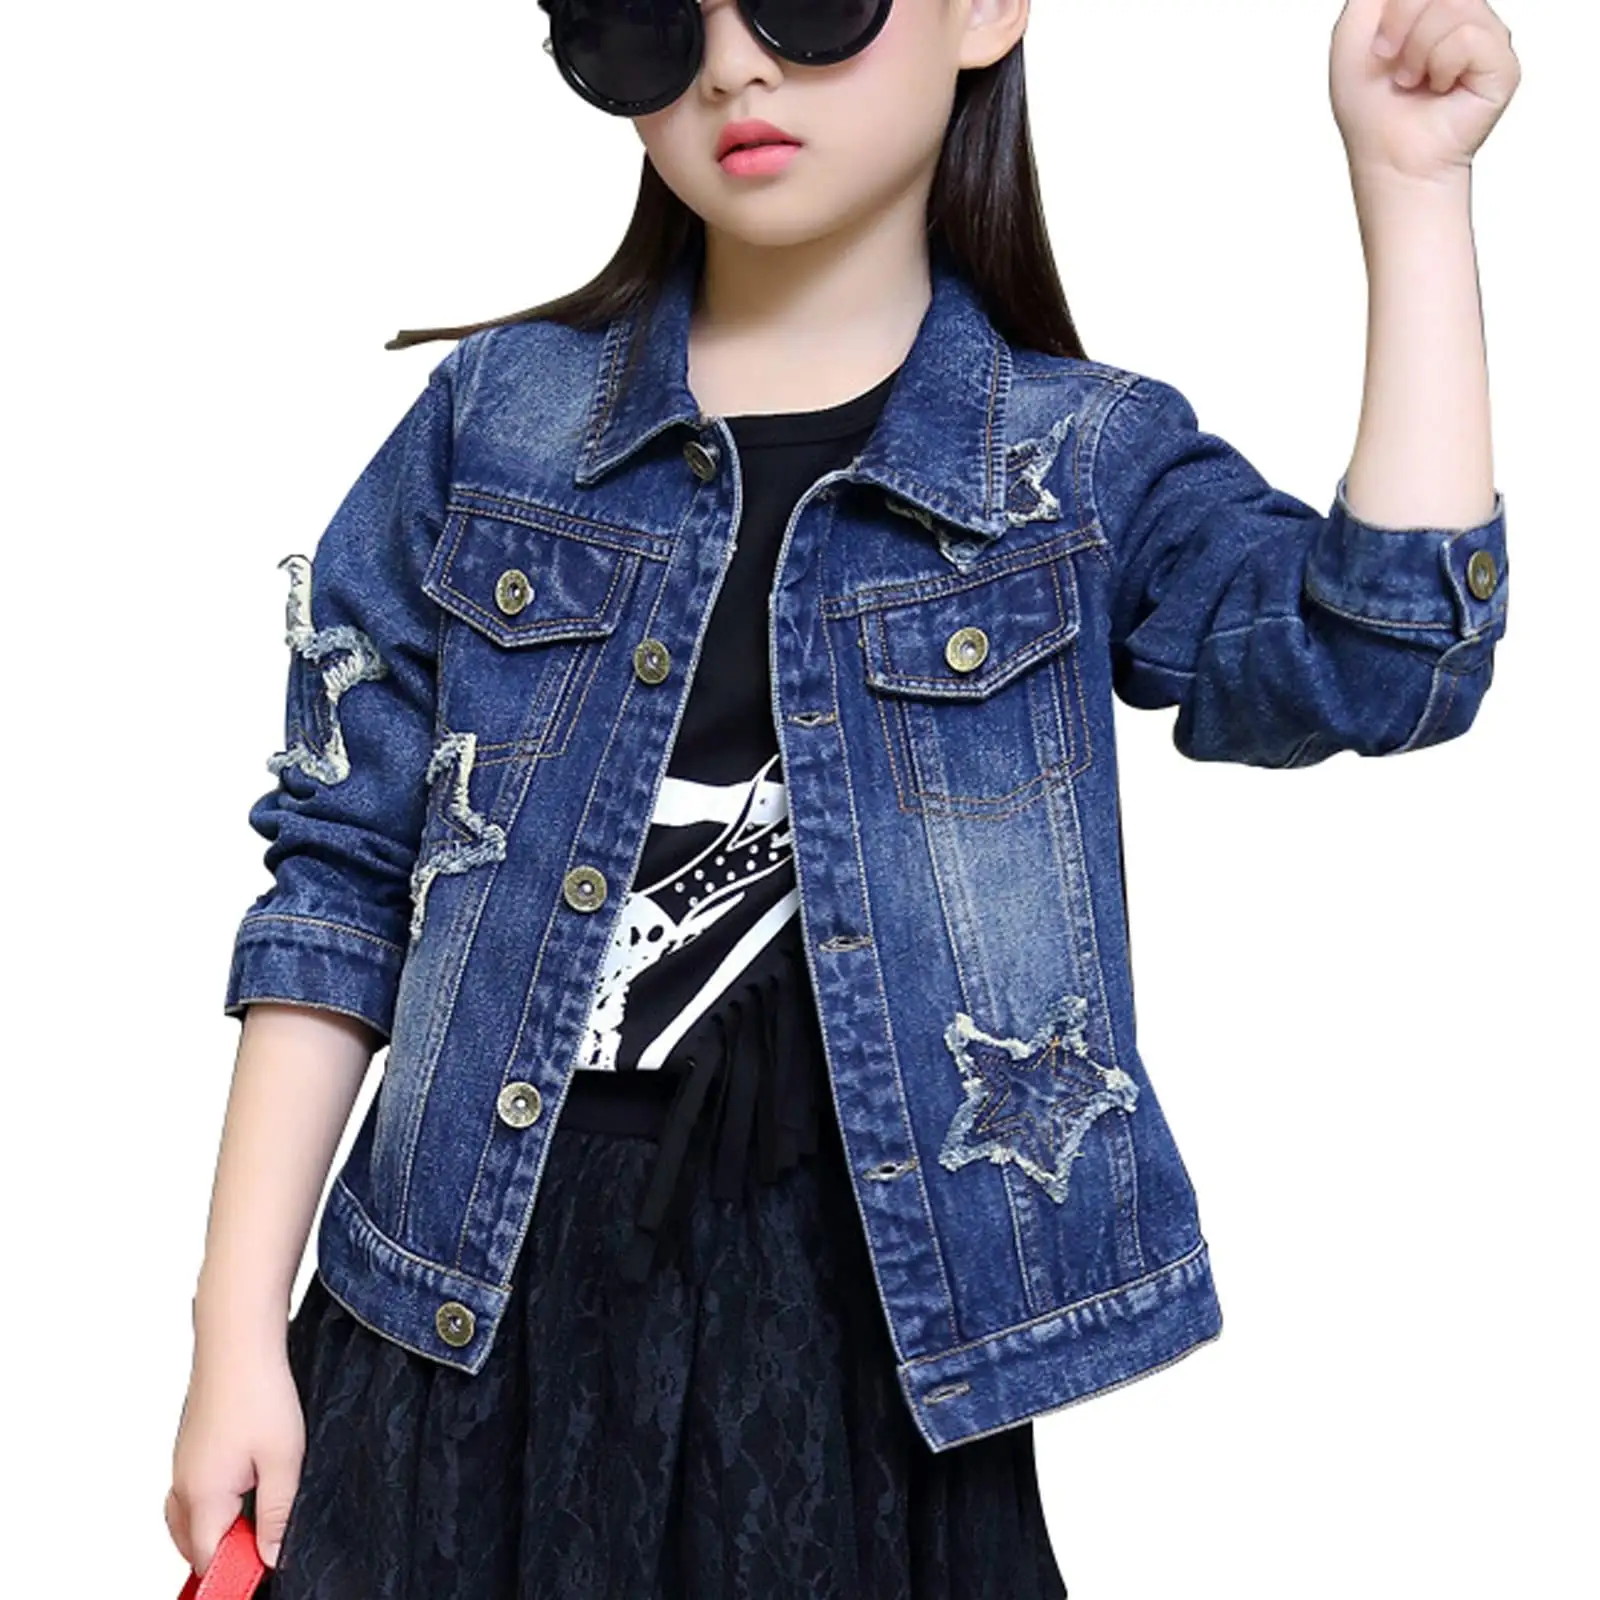 Automne veste en jean enfant vêtements étoile motif jeans manteau mode filles denim jean veste enfants manteau